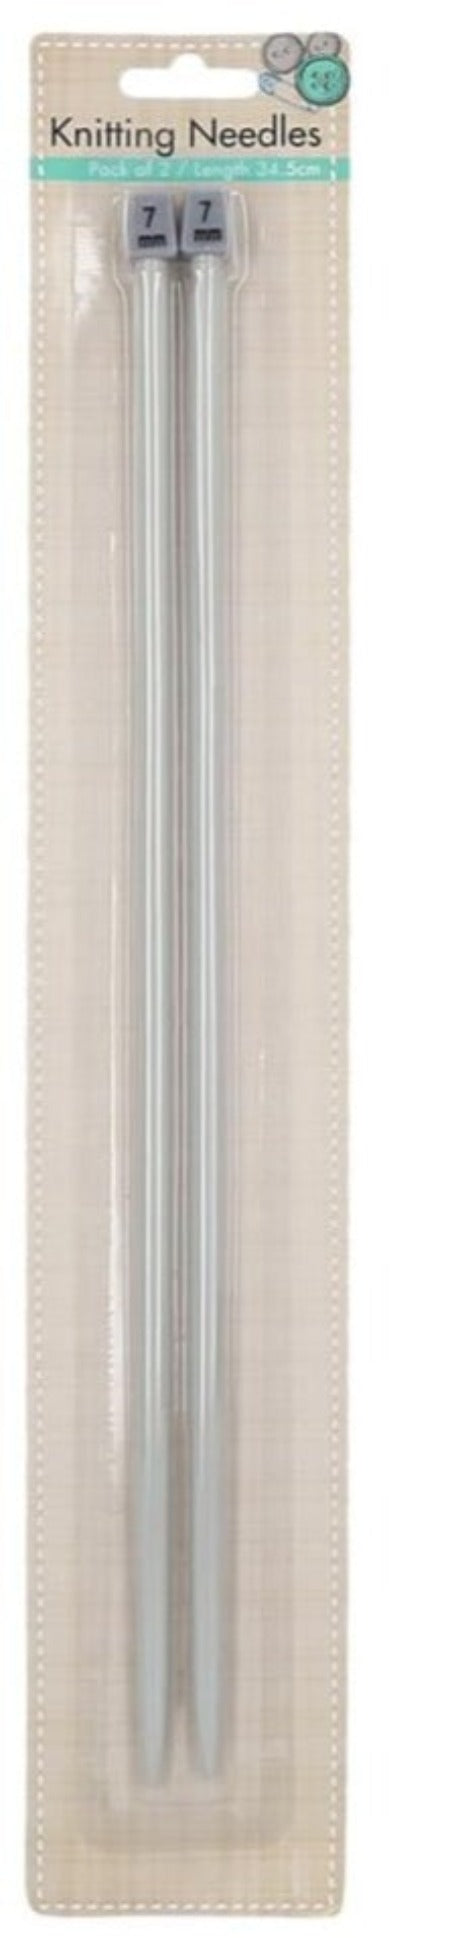 Knitting Needles Length-34.5cm Pack of 2 - Size 7mm